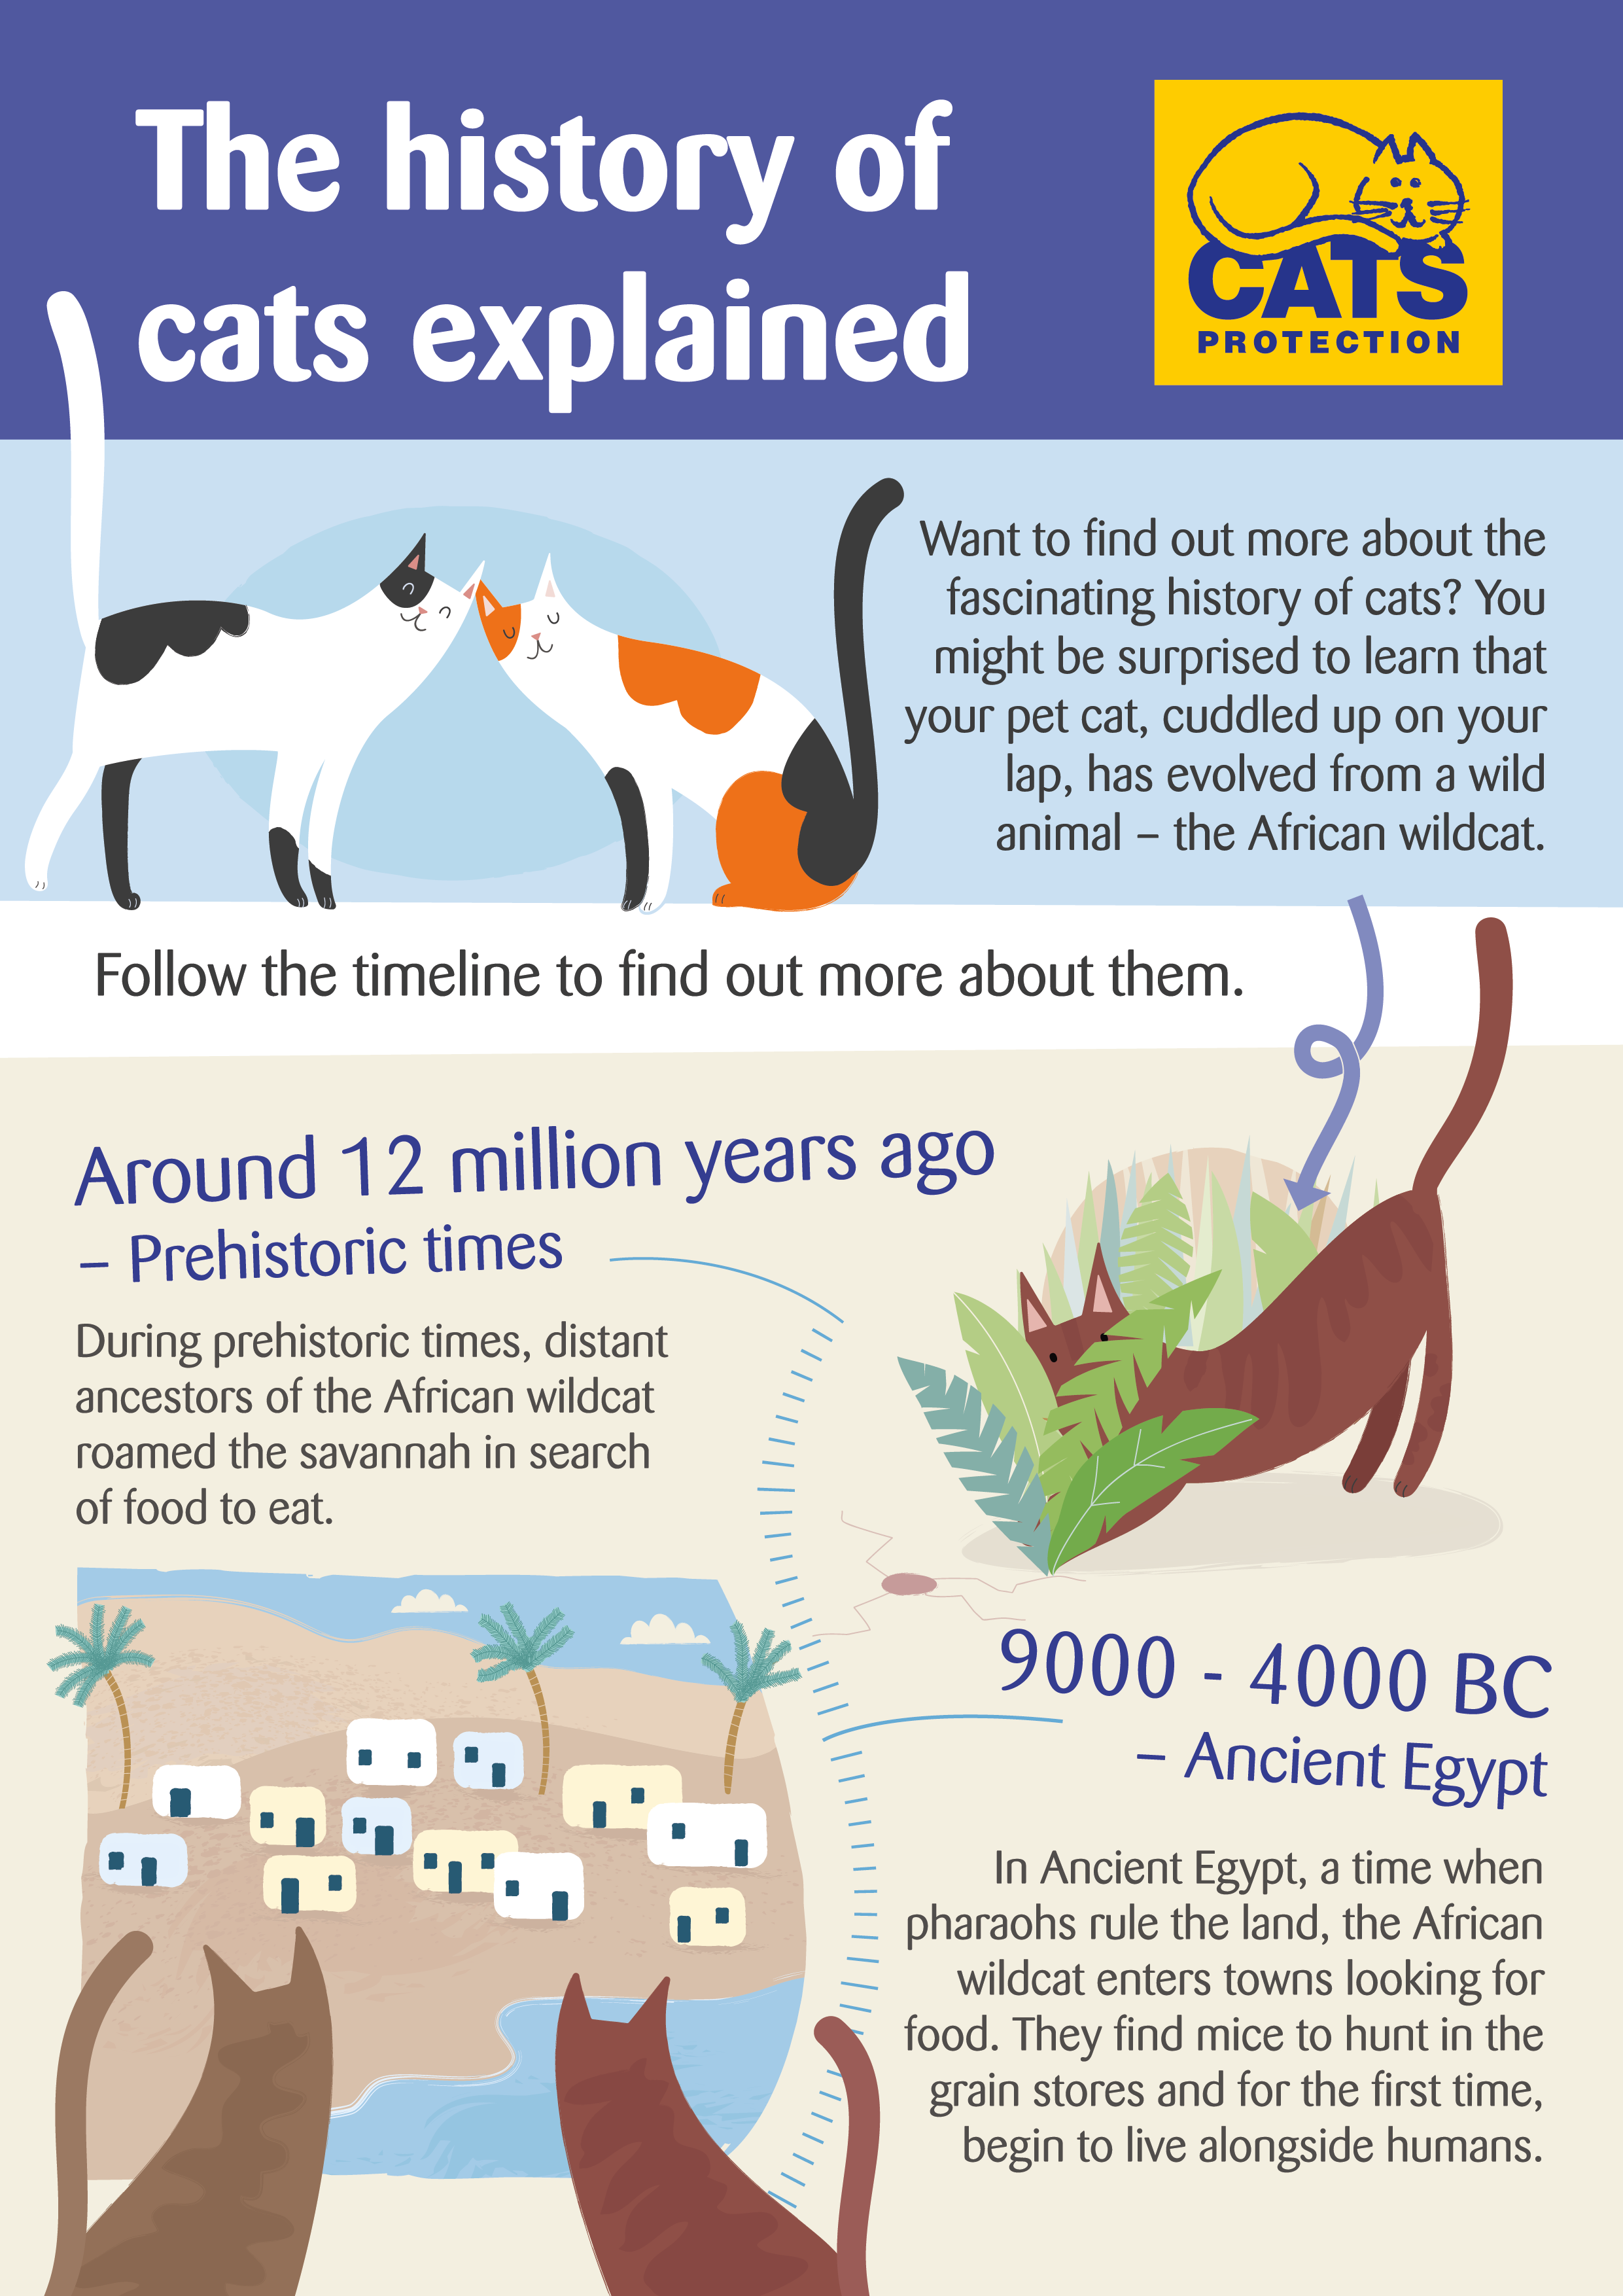 Další informace o kočkách a jejich historii.